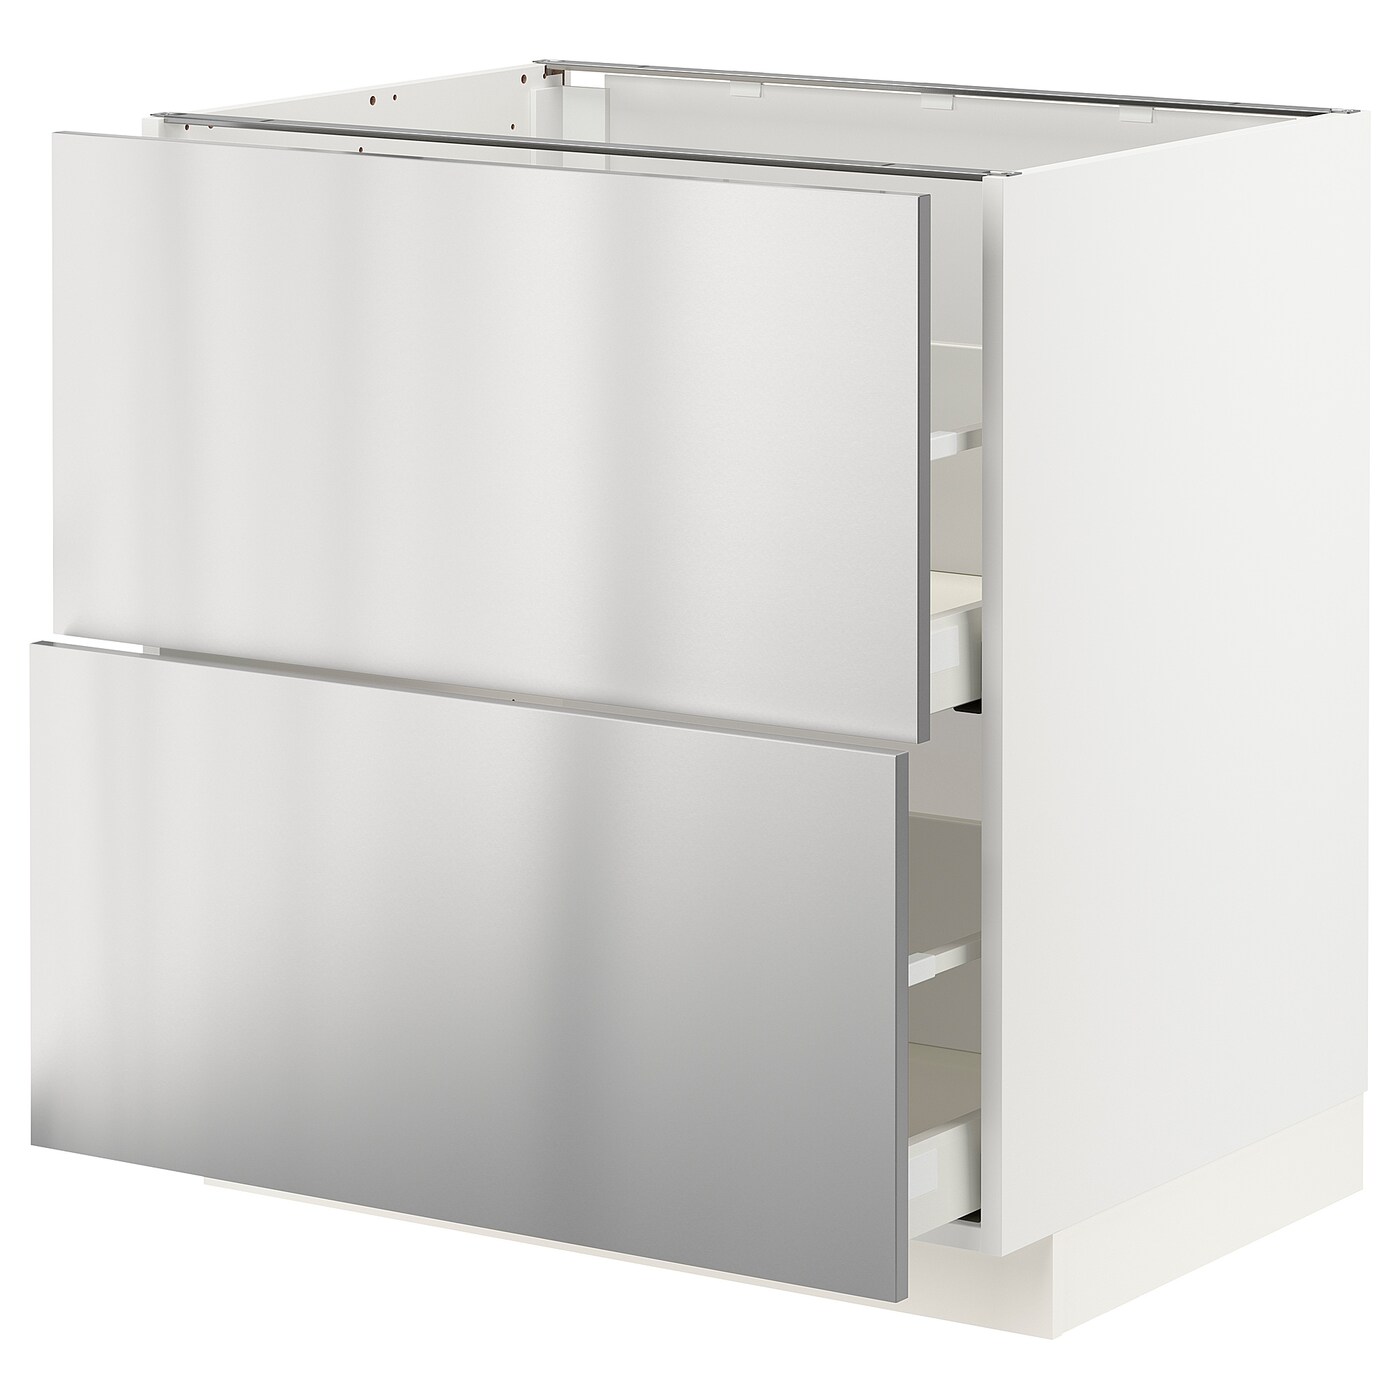 Напольный кухонный шкаф  - IKEA METOD MAXIMERA, 80x61,6x80см, белый/светло-серый, МЕТОД МАКСИМЕРА ИКЕА